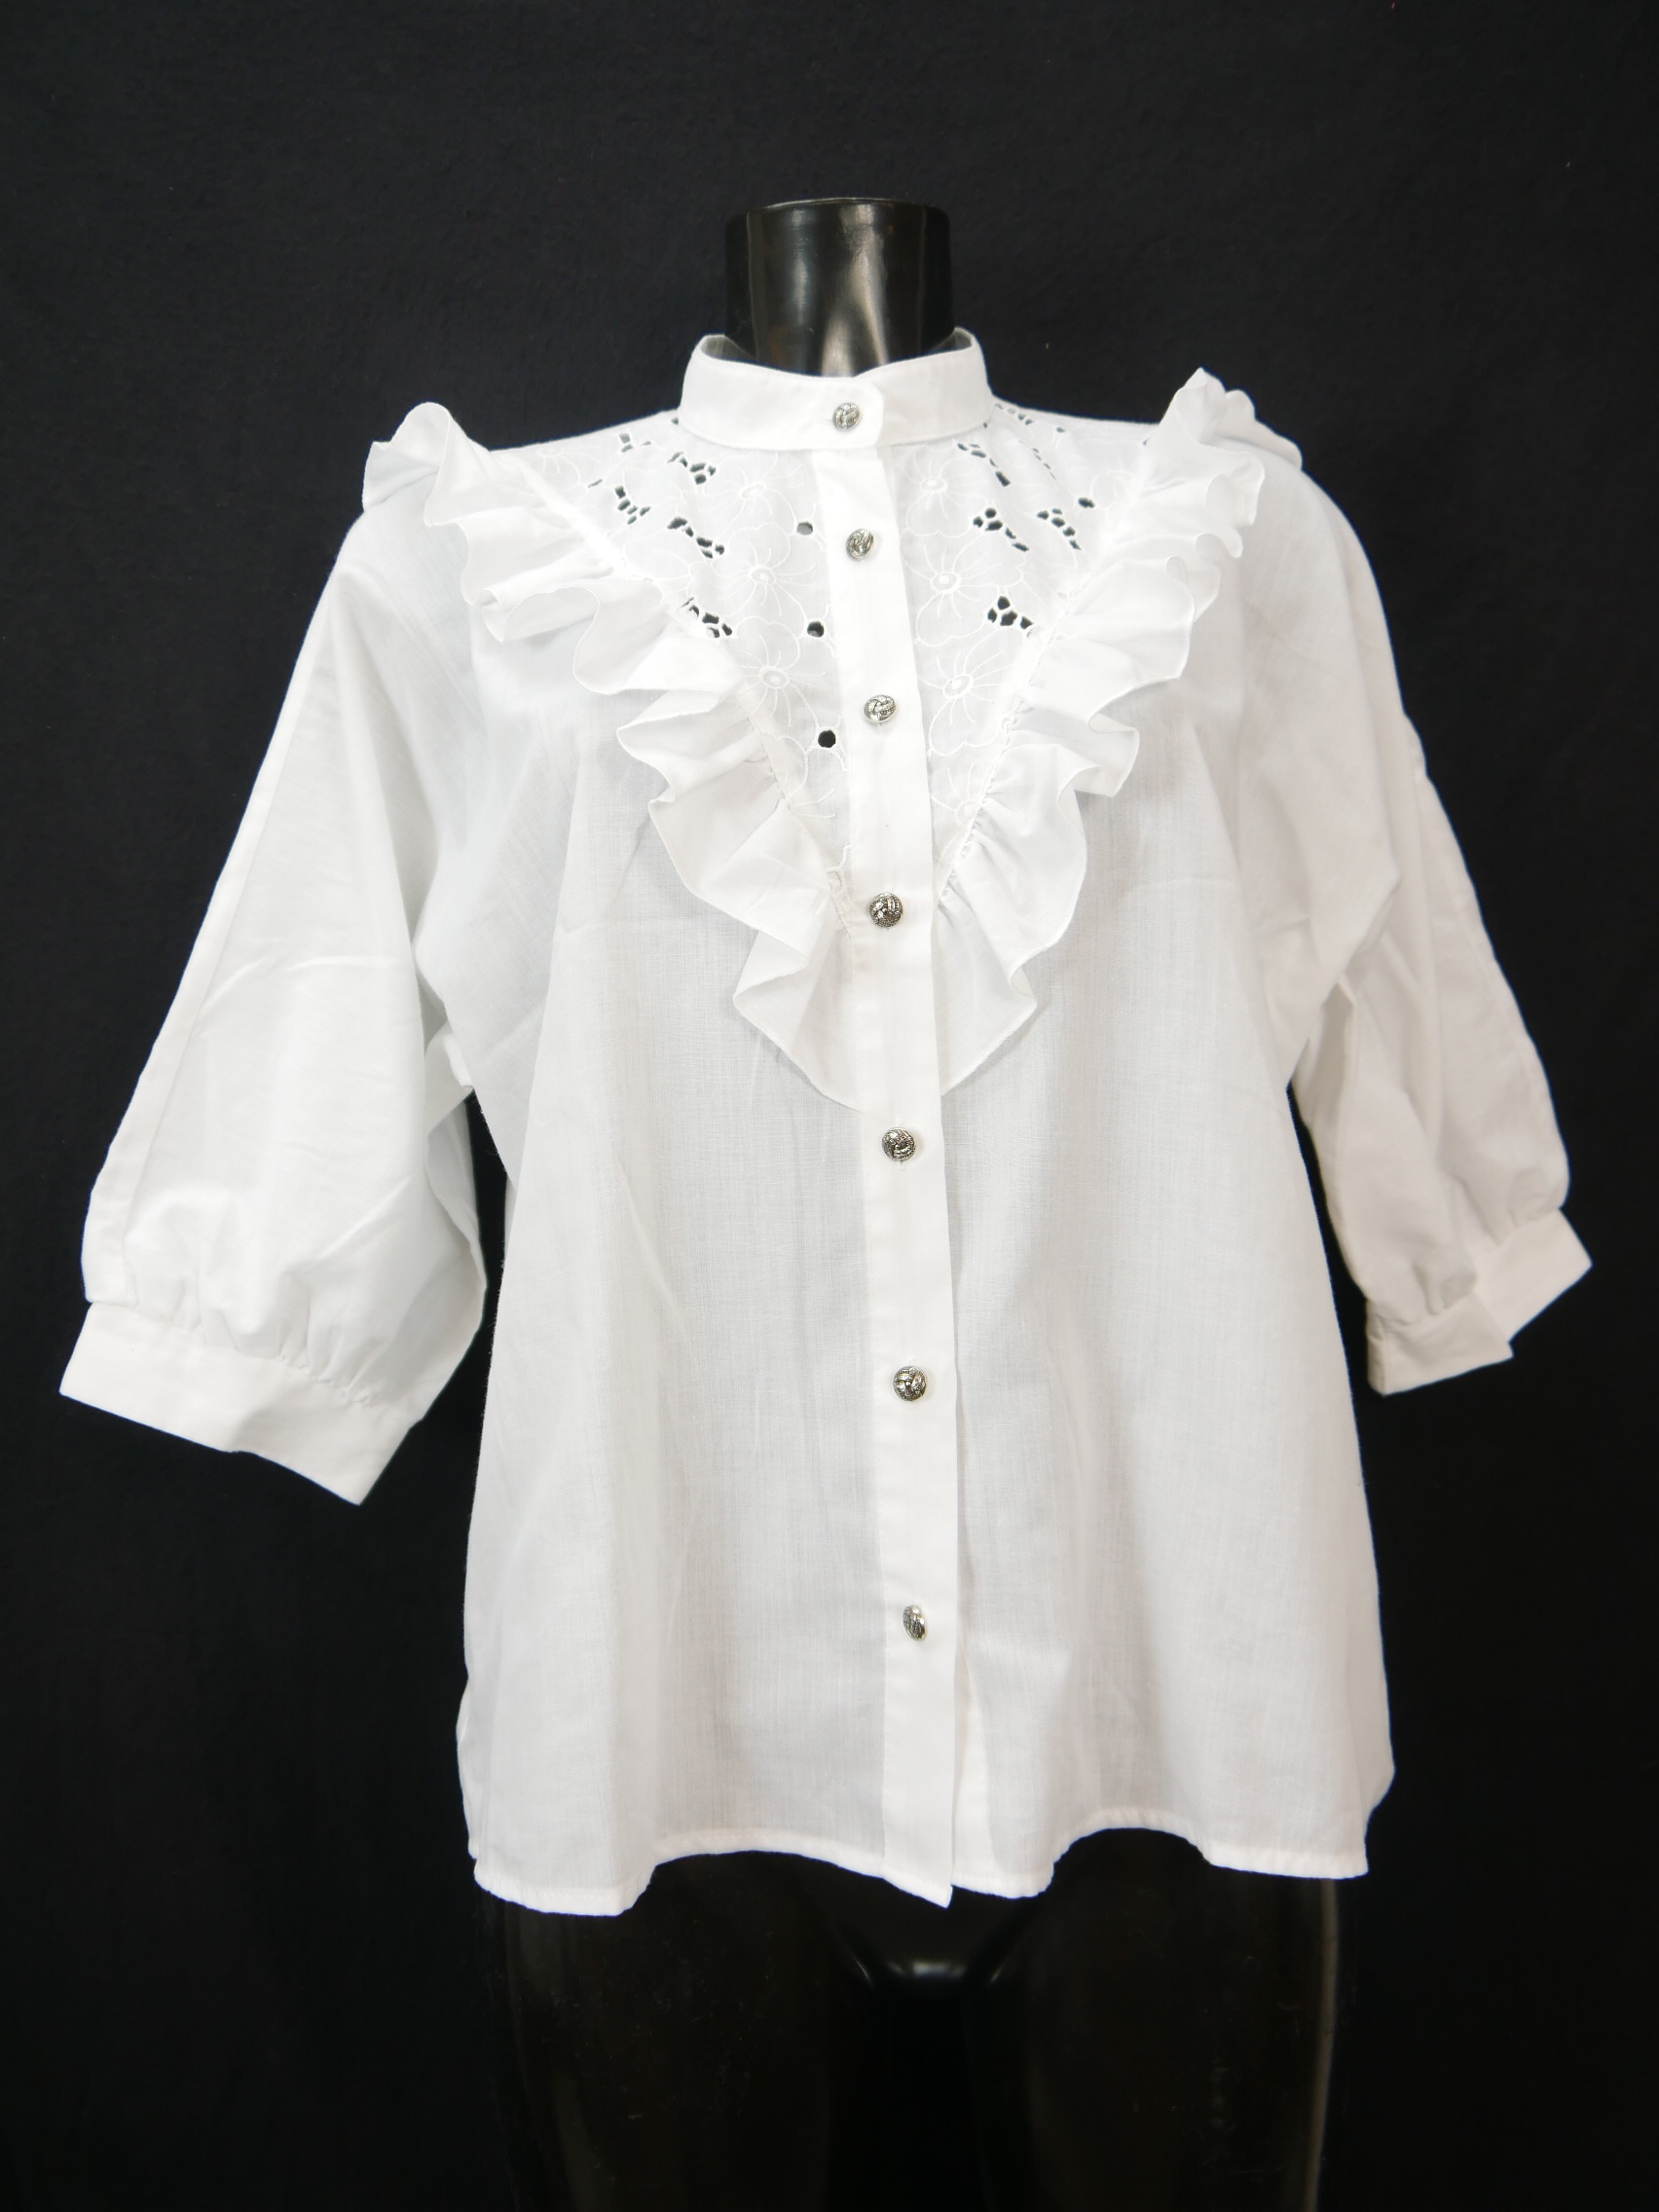 Size 44 Trachten blouse white Blouse alpine costumes cotton blend lace ...